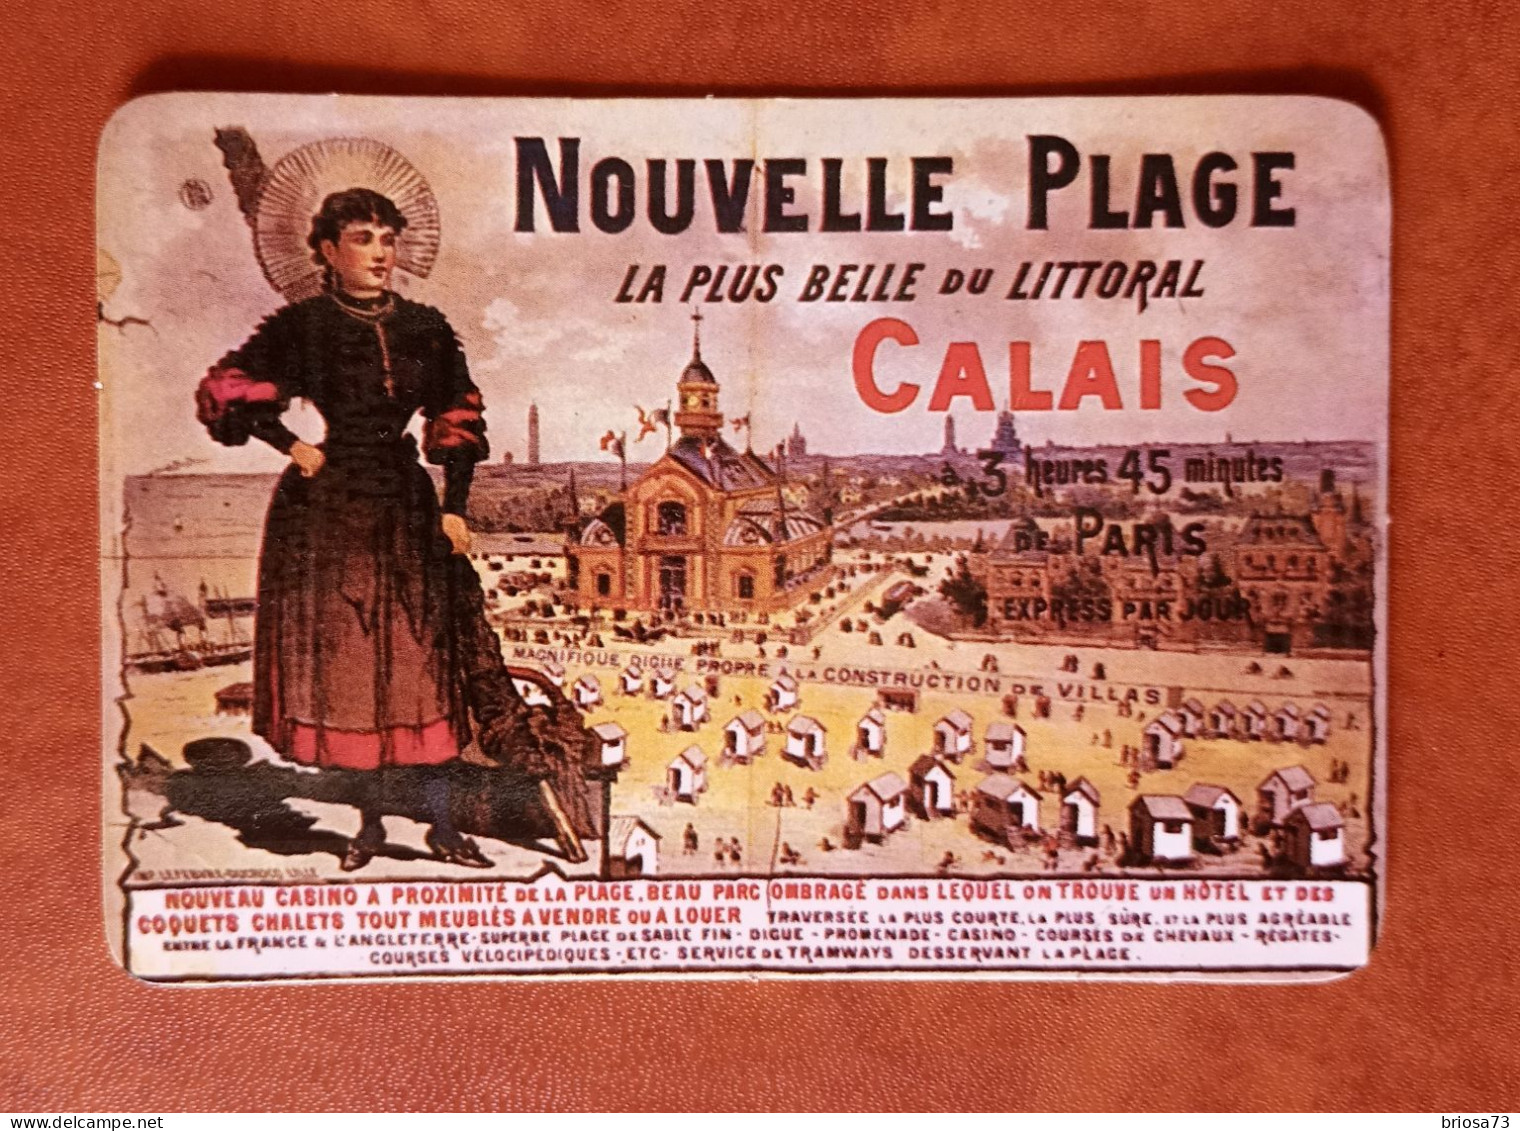 Calendrier De Poche, Novelle Plage- Calais - Grossformat : 1981-90